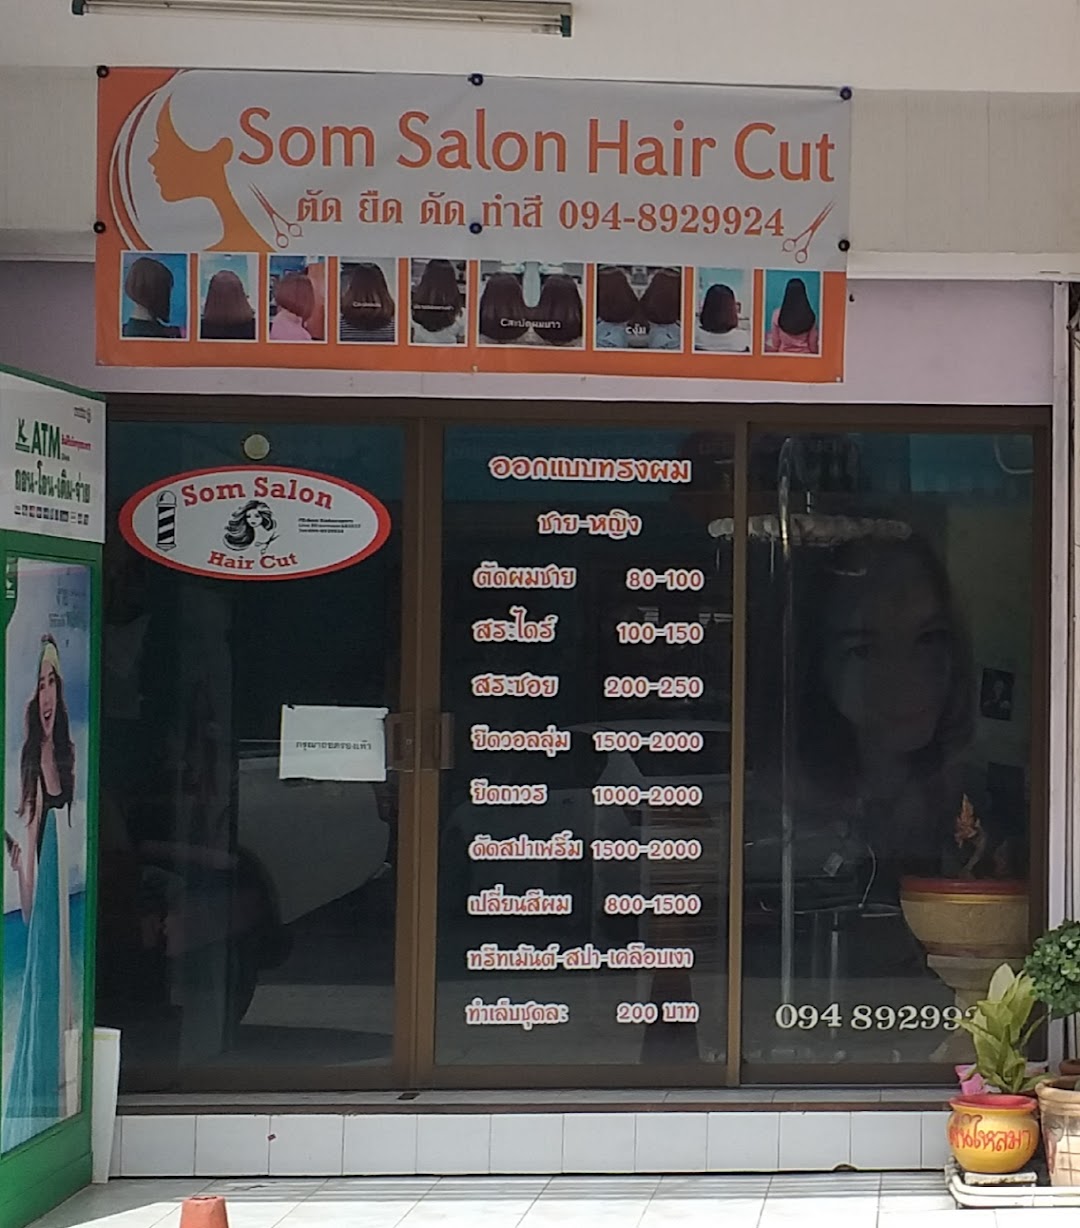 Som Salon Hair Cut